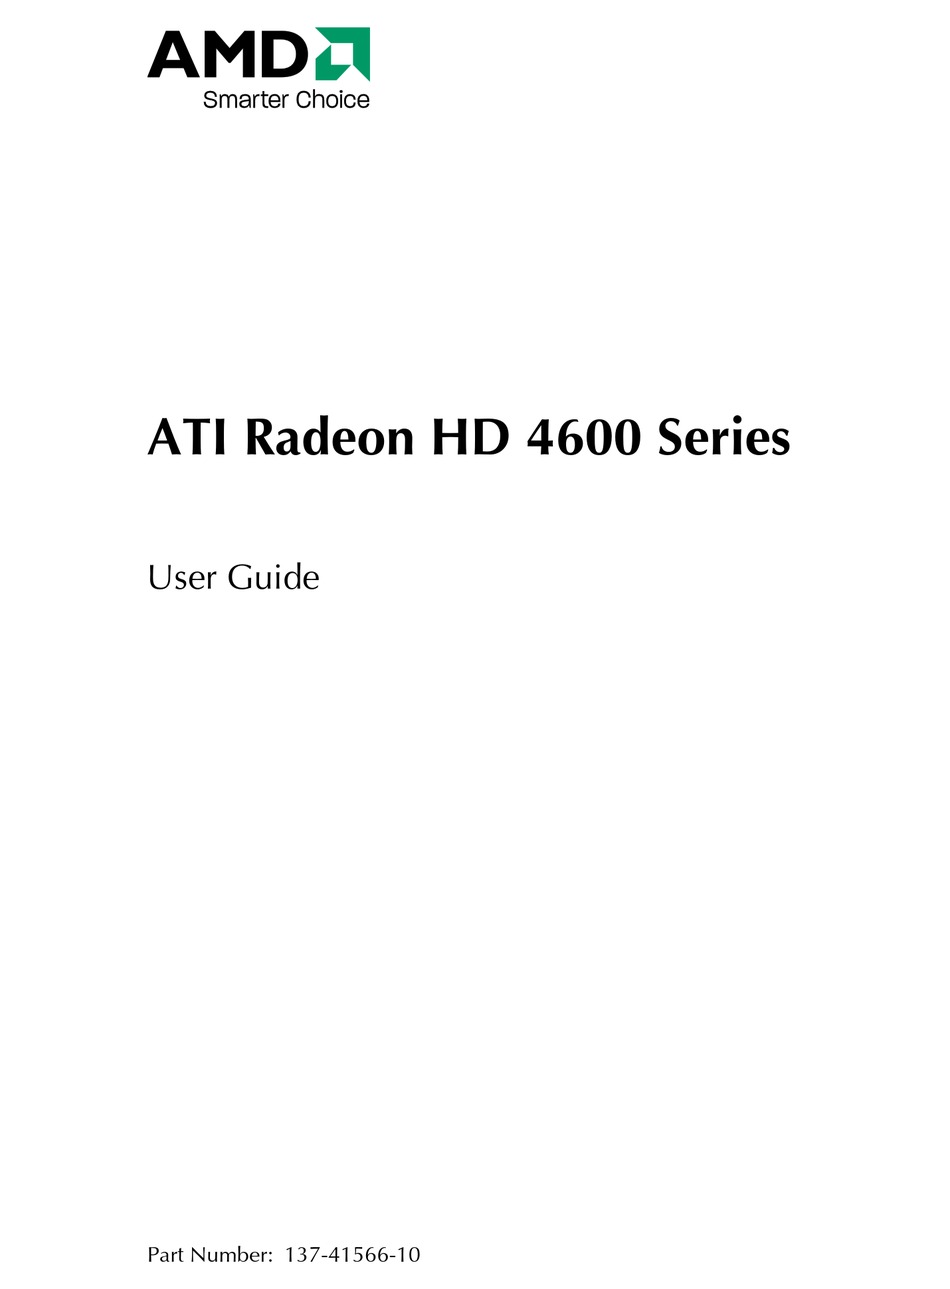 ATI Radeon 4600 Series.